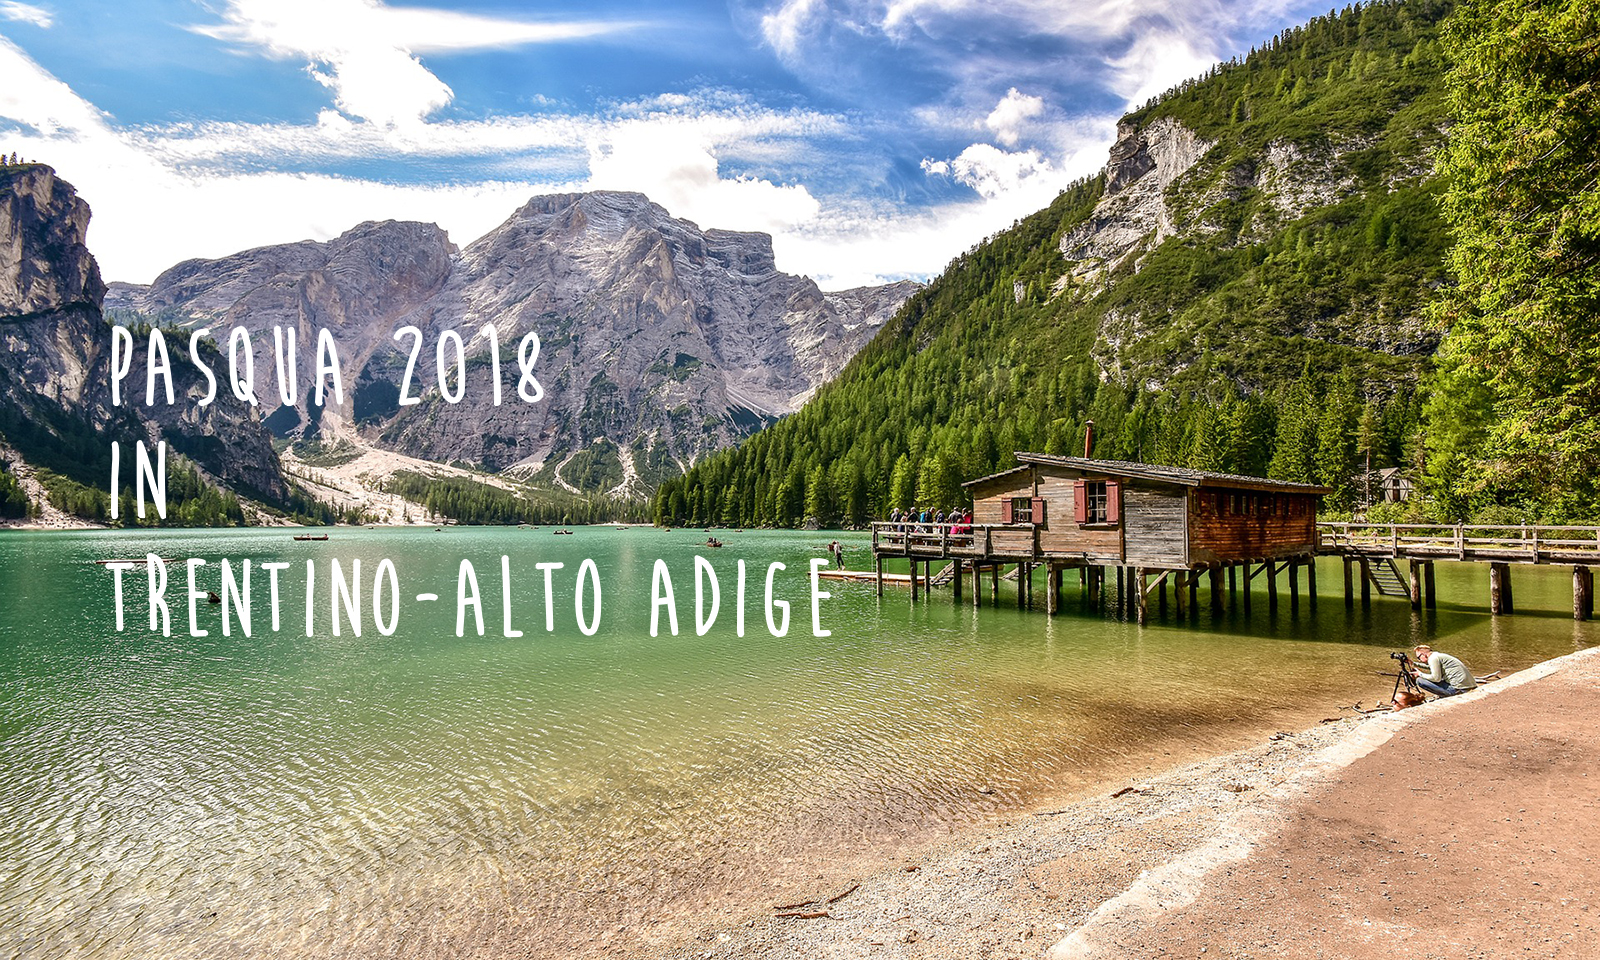 Pasqua 2018: eventi in Trentino-Alto Adige